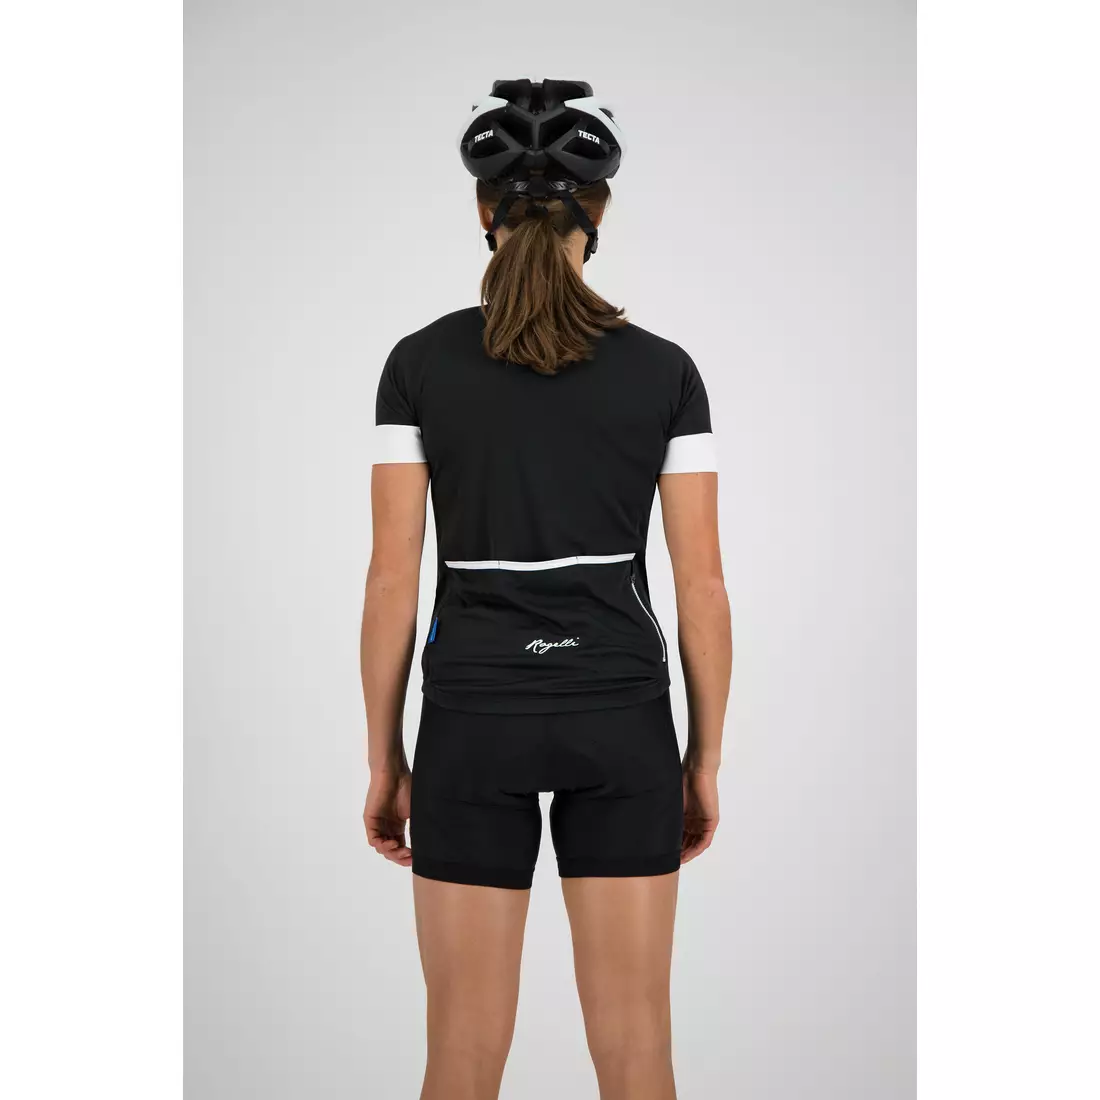 ROGELLI MODESTA dámsky cyklistický dres, čierno-biela